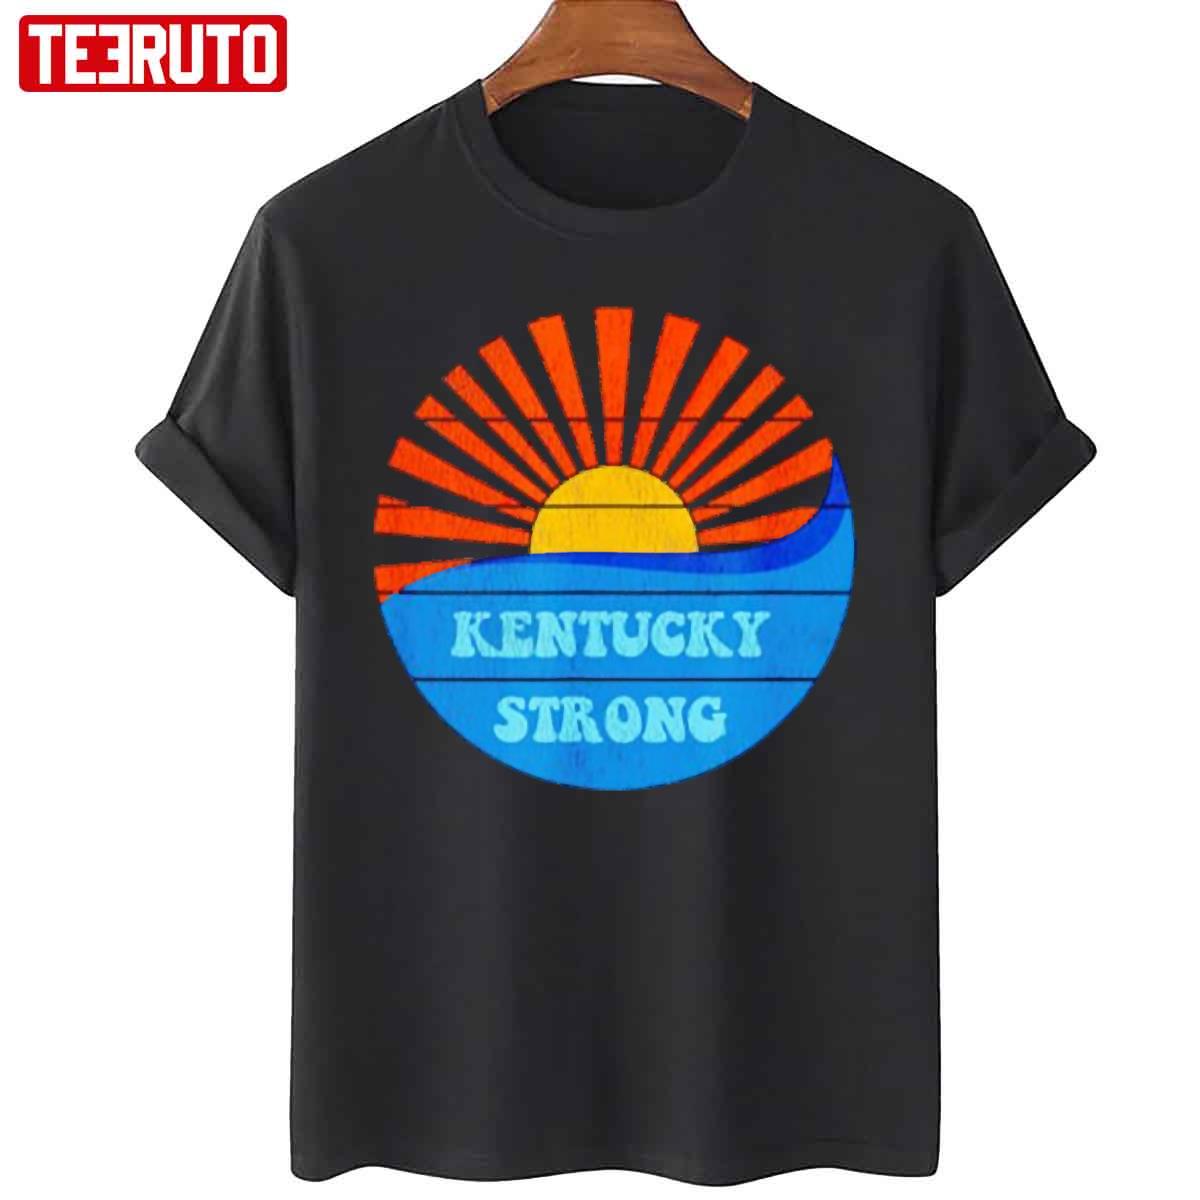 Kentucky Strong Sunshine Unisex T-Shirt